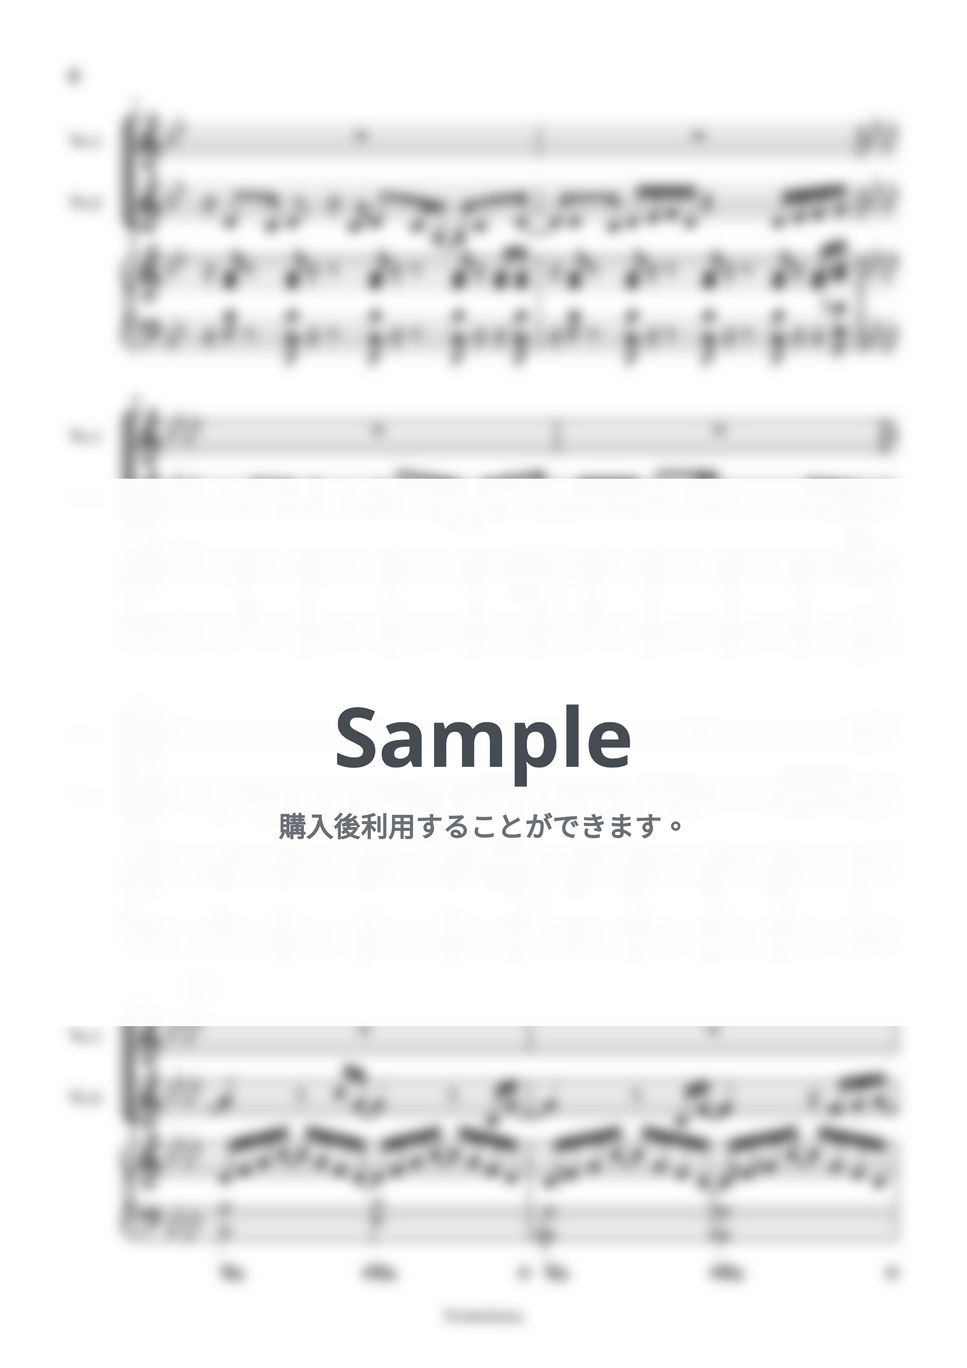 大橋トリオ duet with 上白石萌音 - ミルクとシュガー (2声+伴奏 / デュエットアレンジ) by Trohishima